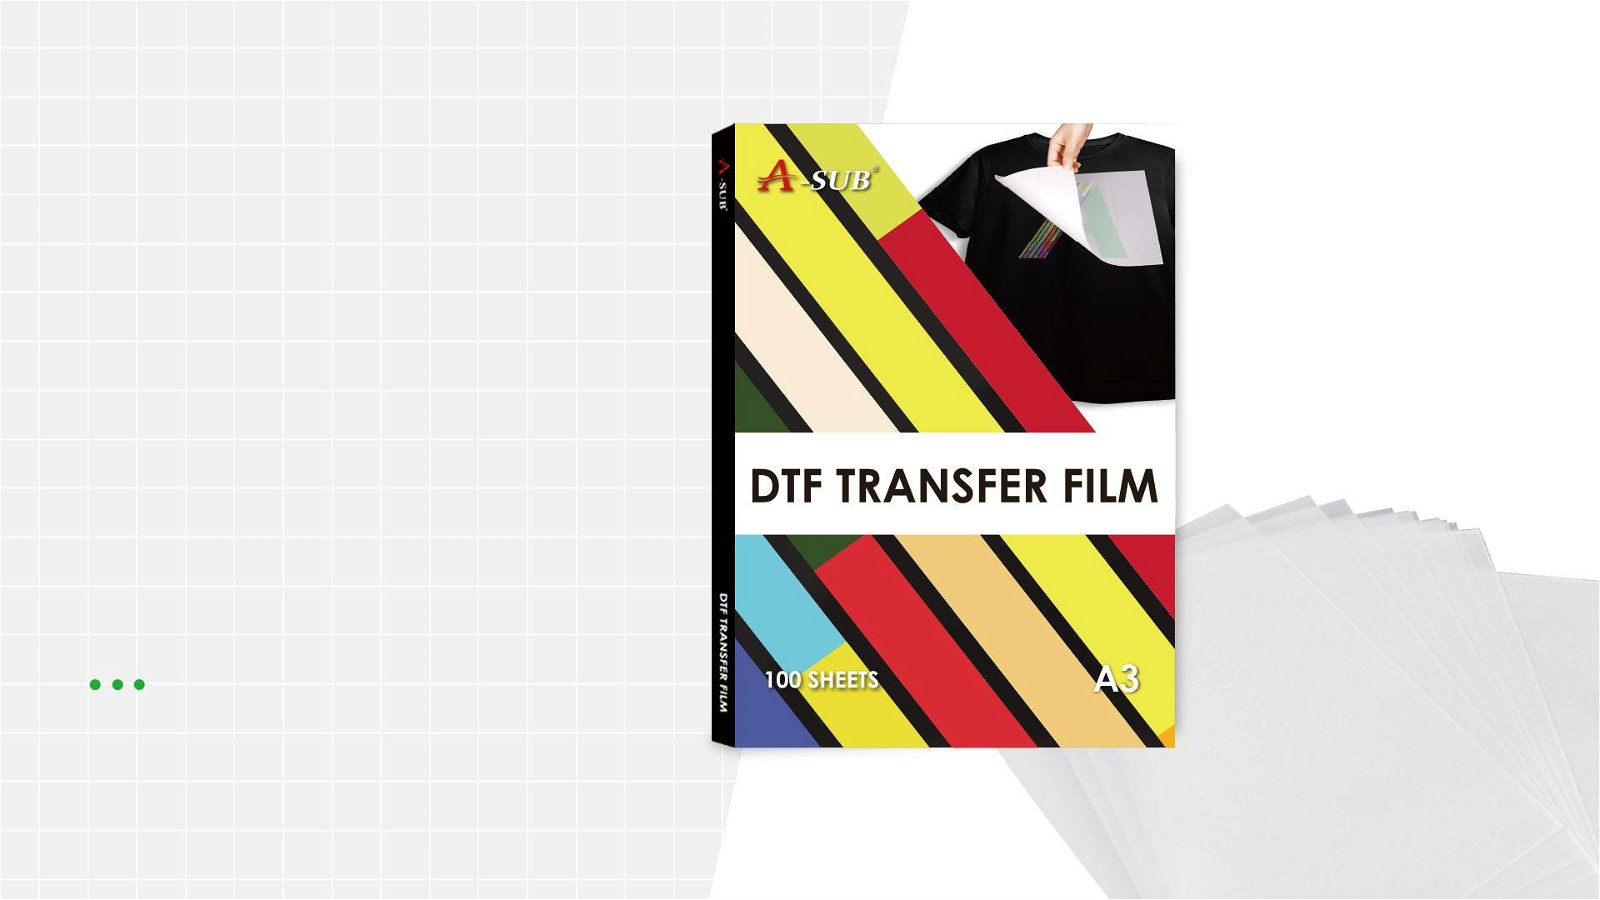 A-SUB DTF Transfer Film A3